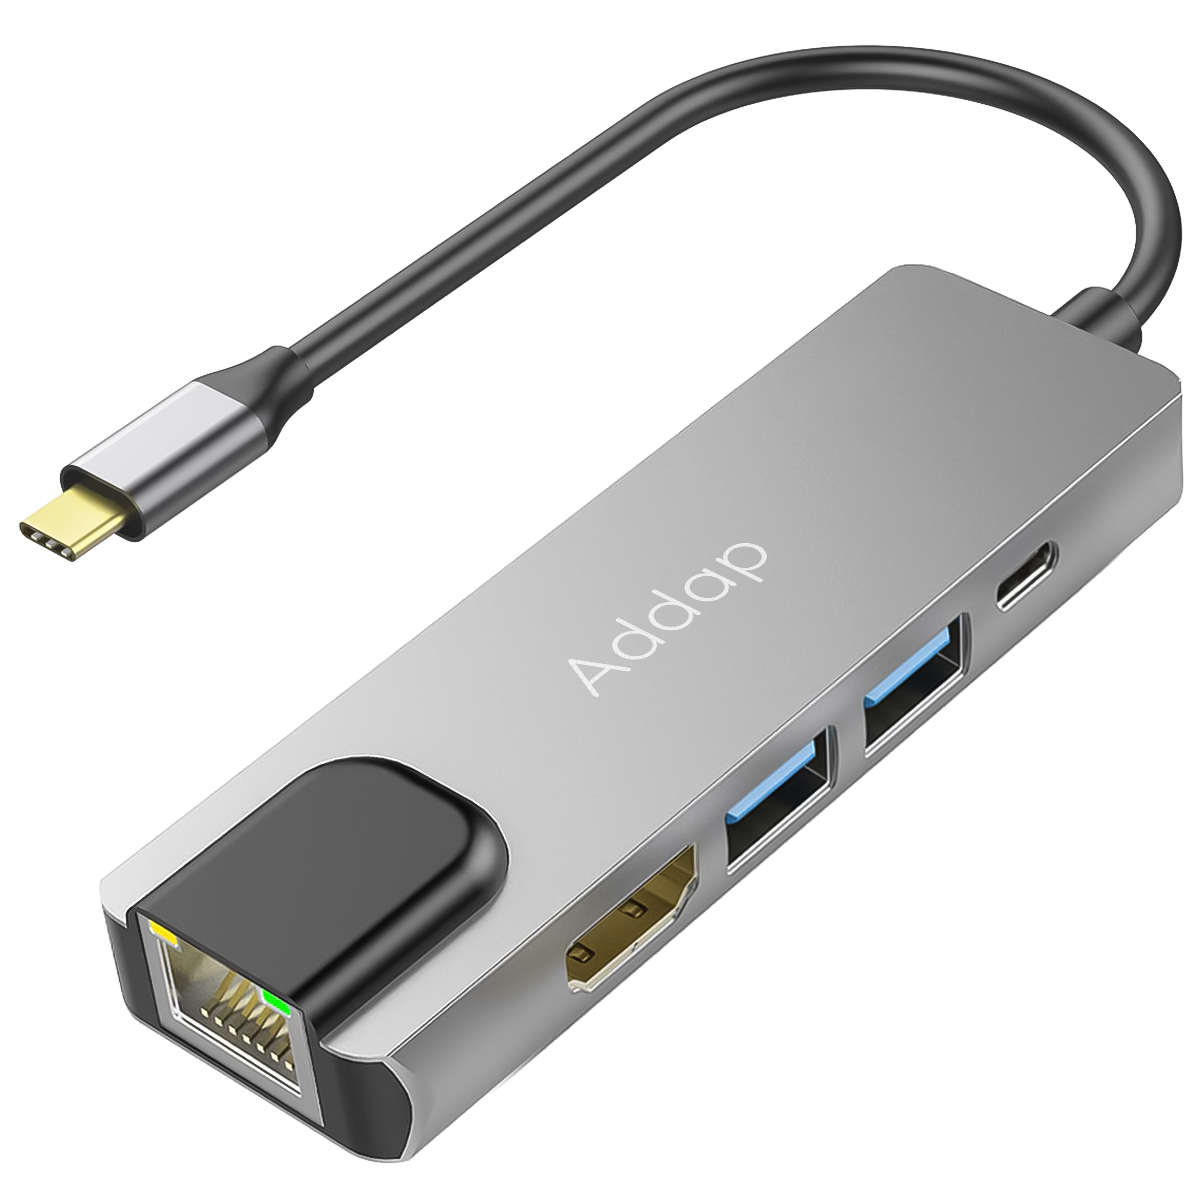 Мультифункциональный хаб / разветвитель Addap MH-09s 5в1 2 x USB 3,0 + Type-C + HDMI + Ethernet Gigabit